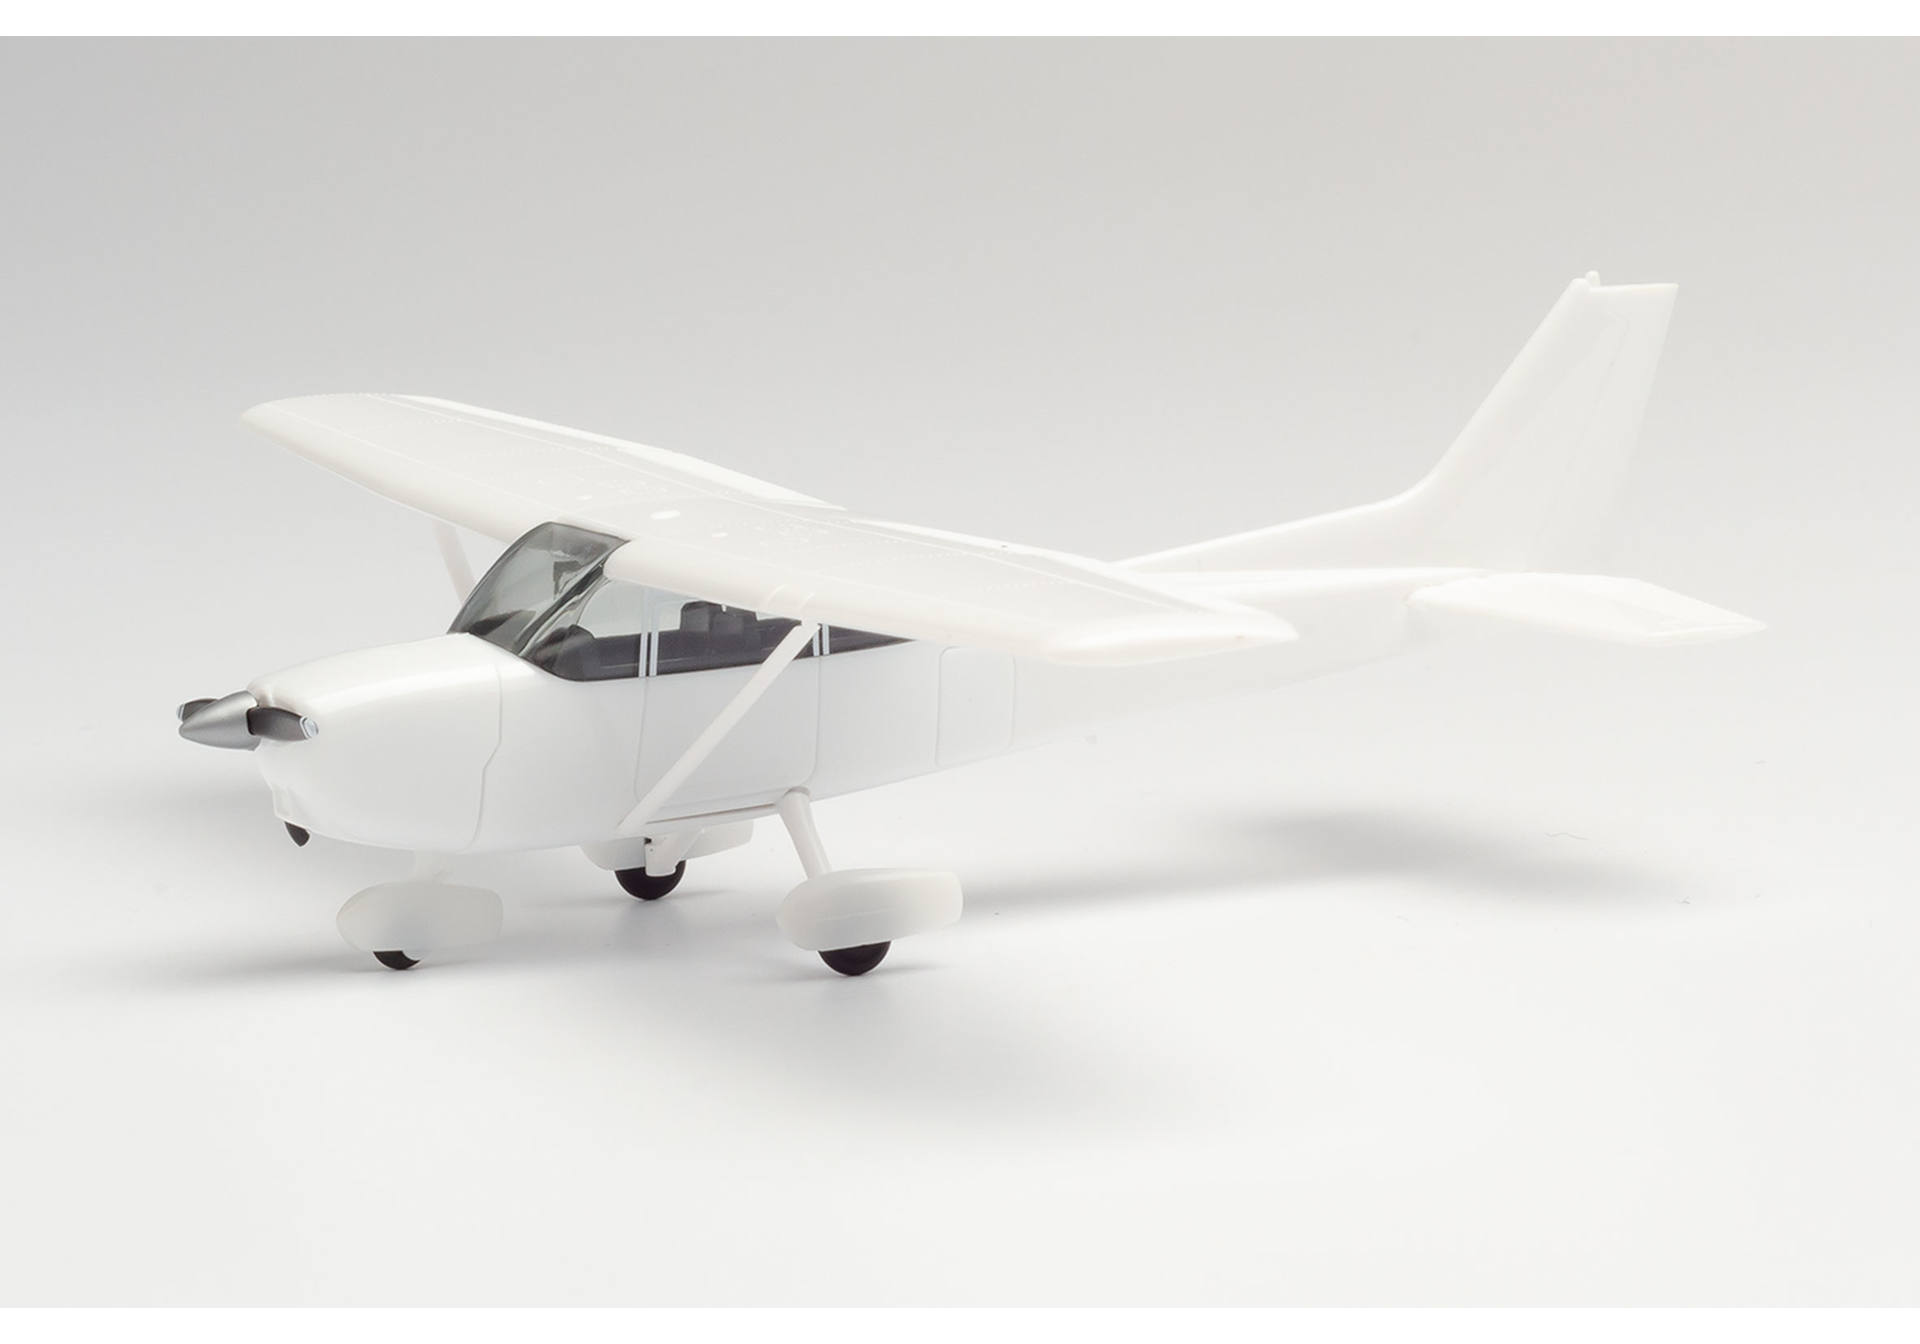 Minikit sport airplane, white